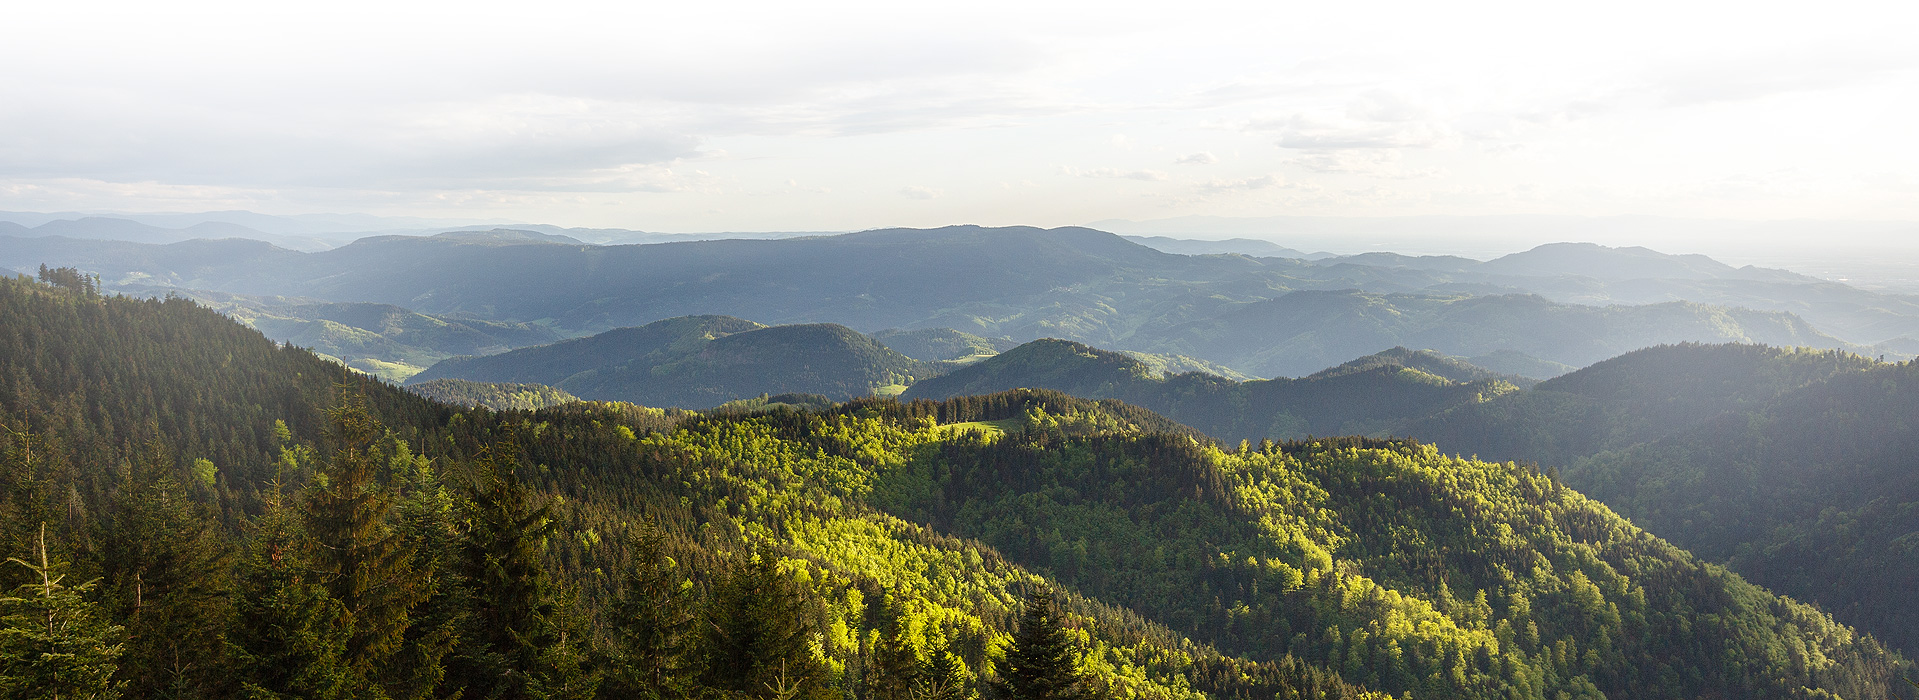 Ausblick über die Berggipfel des Schwarzwalds. Die Sonne leuchtet von rechts auf die Bäume.